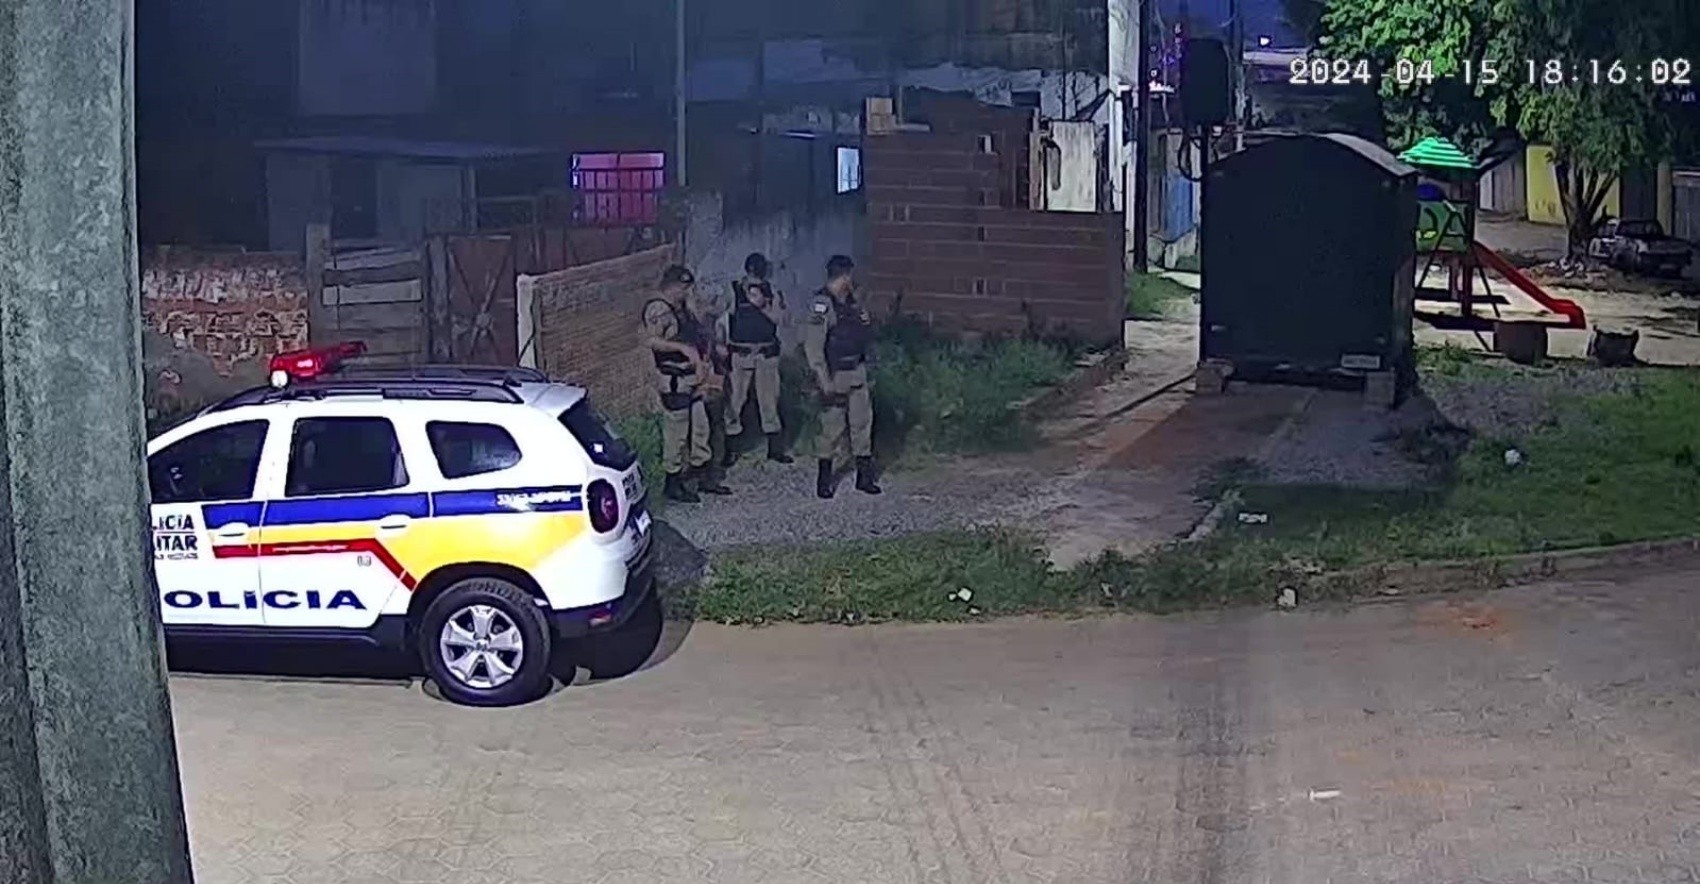 Homem de 33 anos é baleado no Bairro São Geraldo, em Pouso Alegre, MG